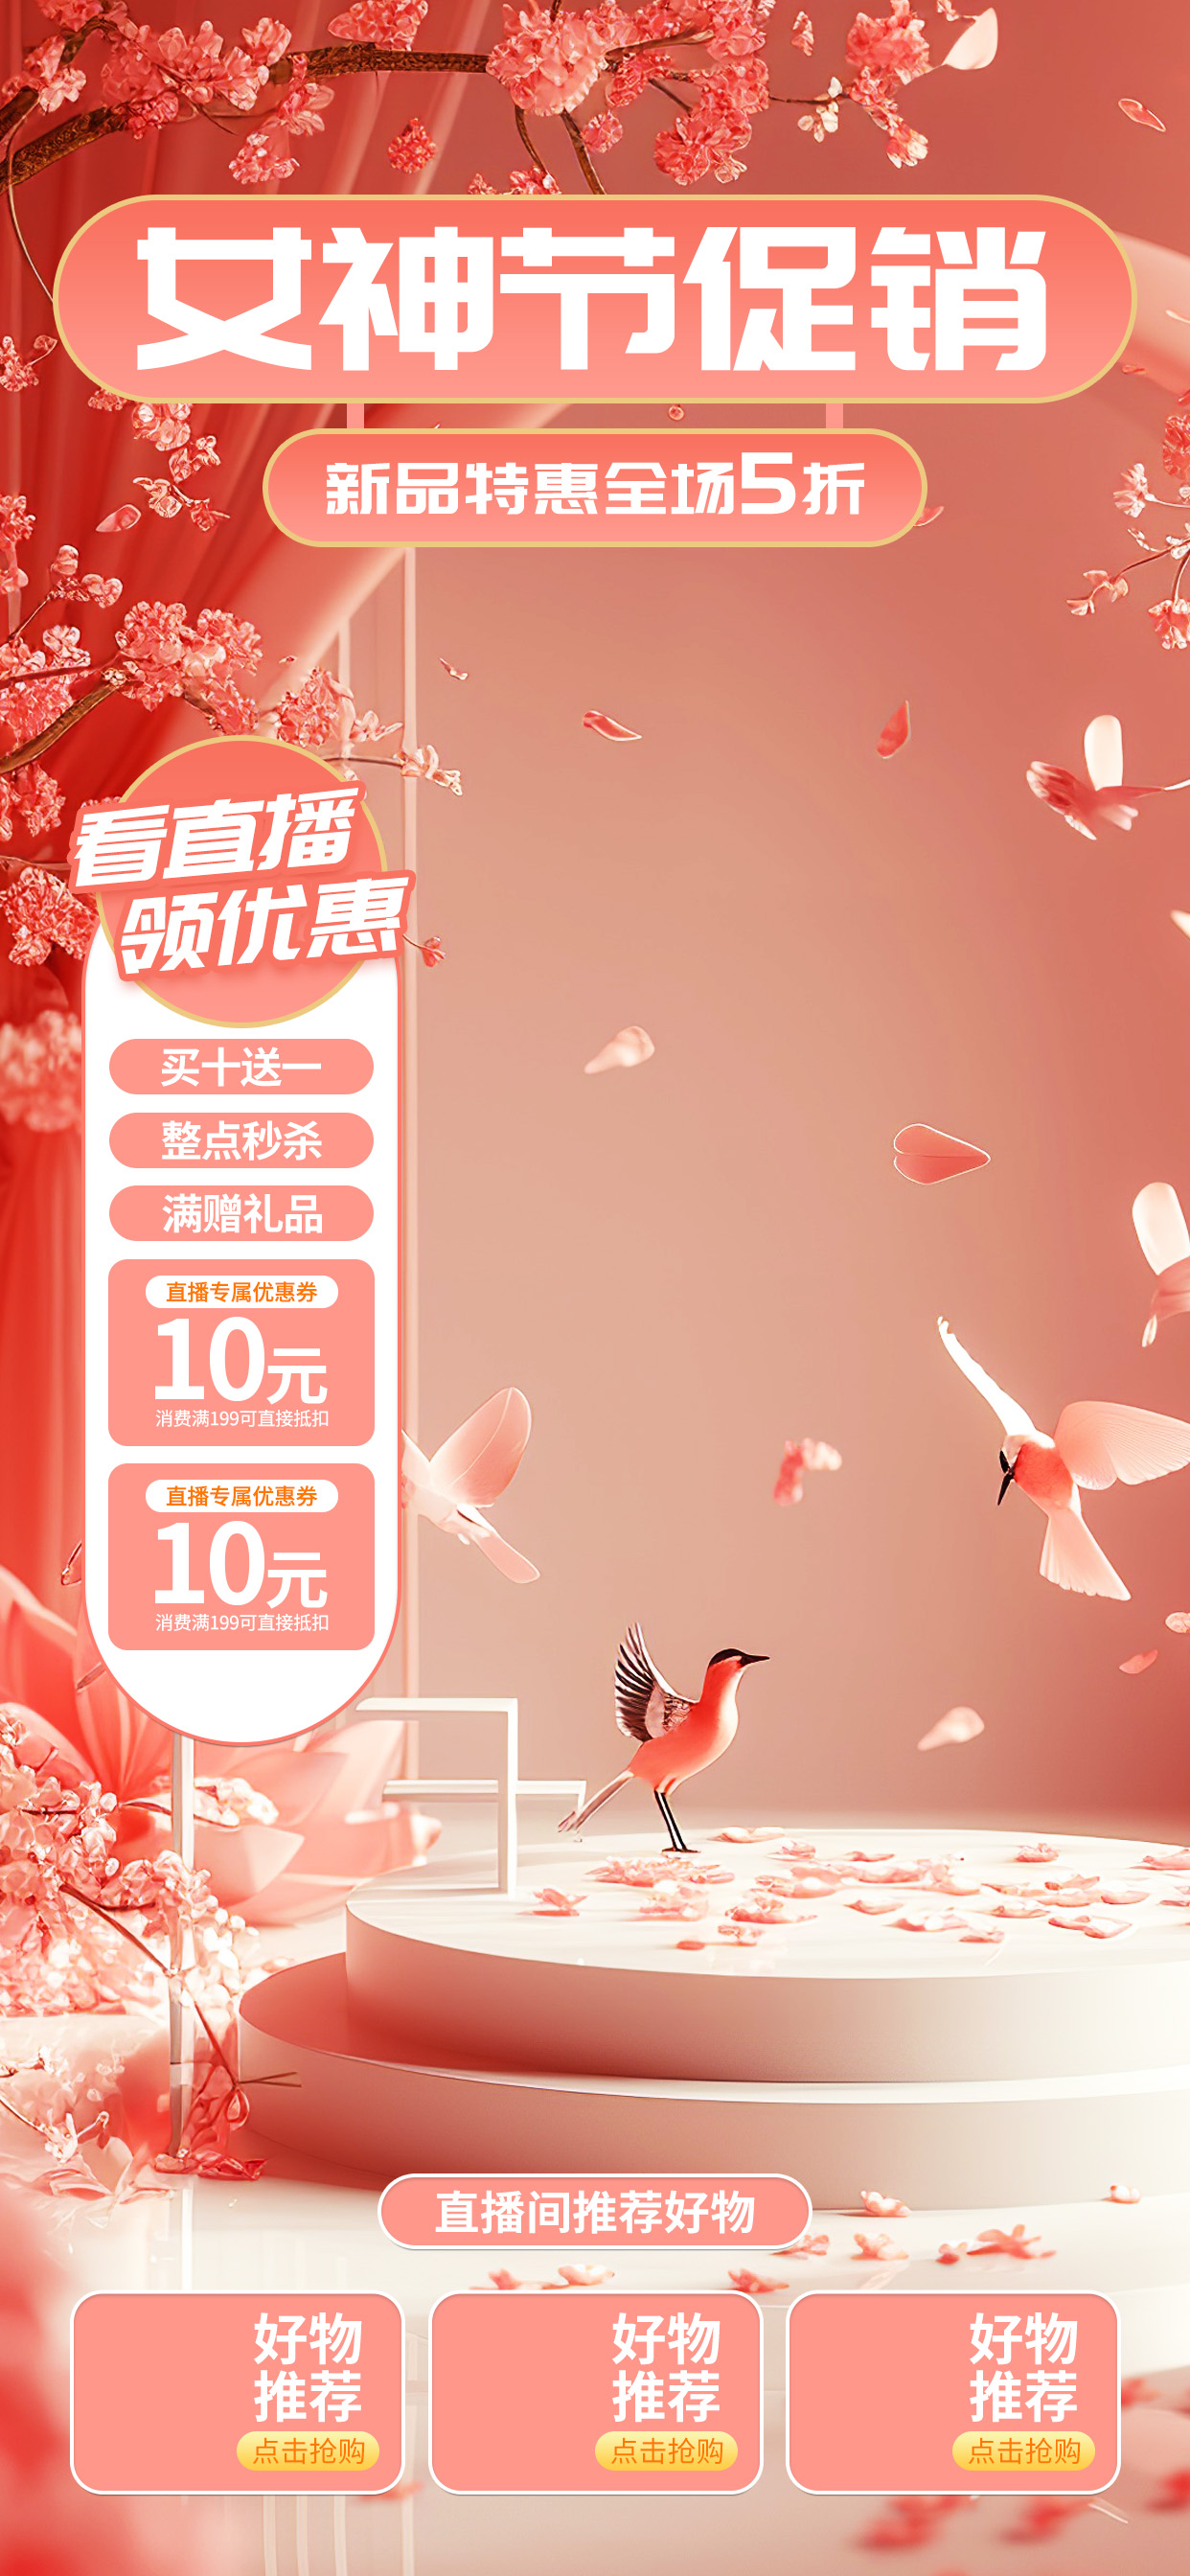 女神节促销电商展台粉色直播间背景电商网页设计图片